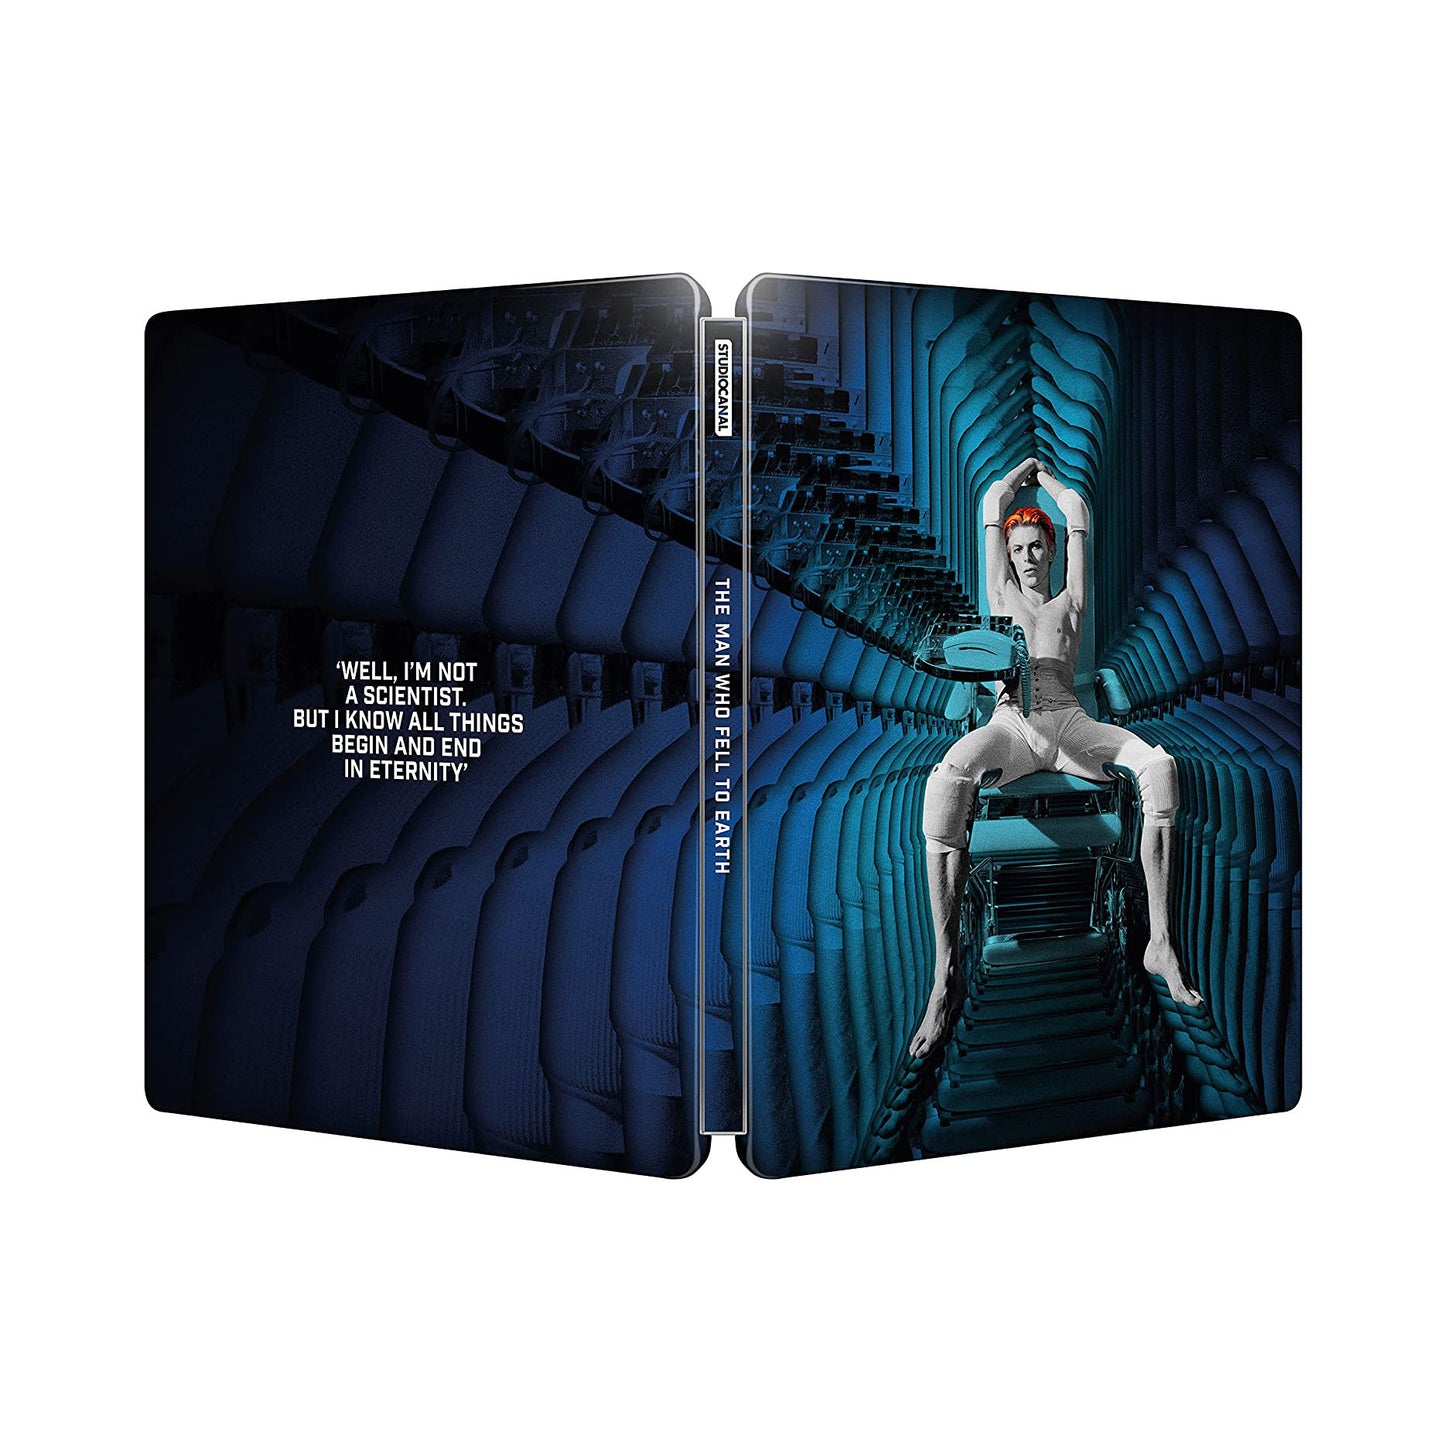 Man Who Fell to Earth David Bowie SteelBook Steel Book 4K Ultra HD Studio Canal